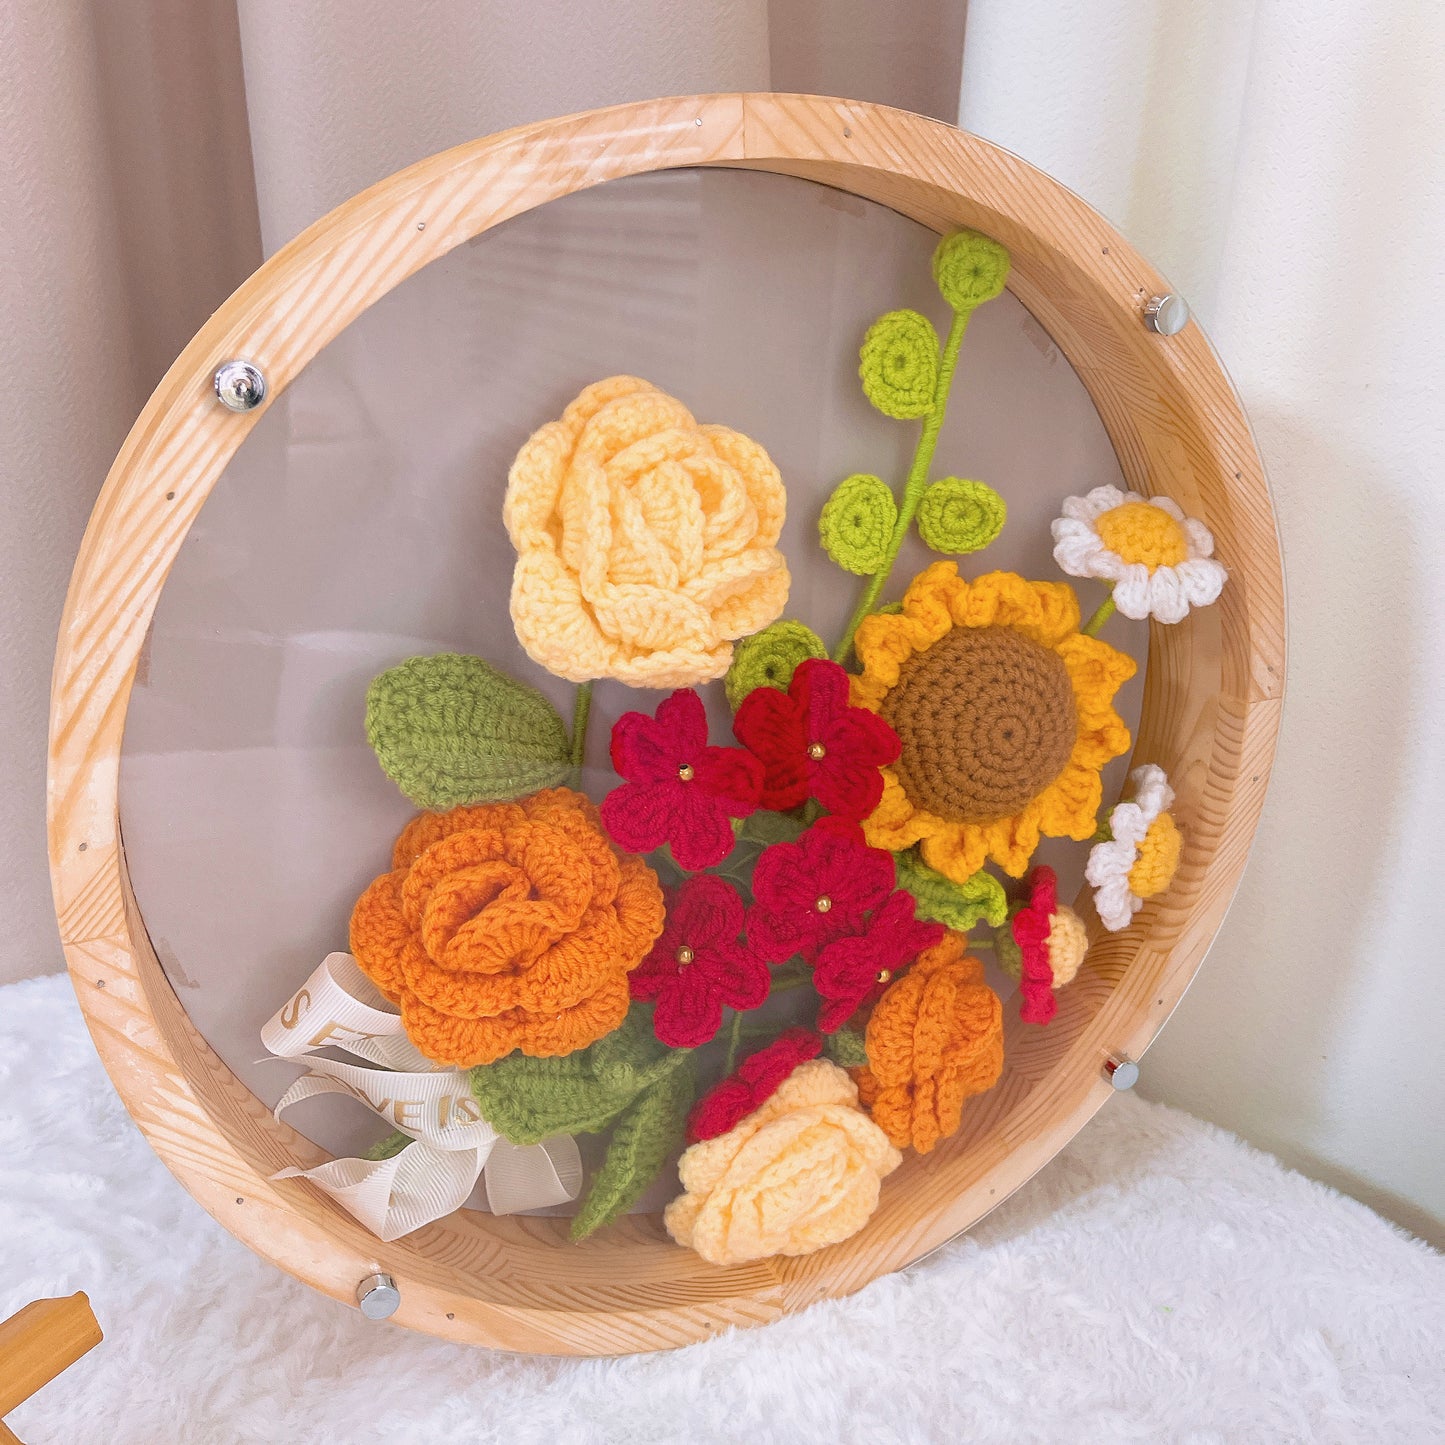 Sunny Breeze Artistry : Décoration de cadre de fleurs au crochet fabriquée à la main